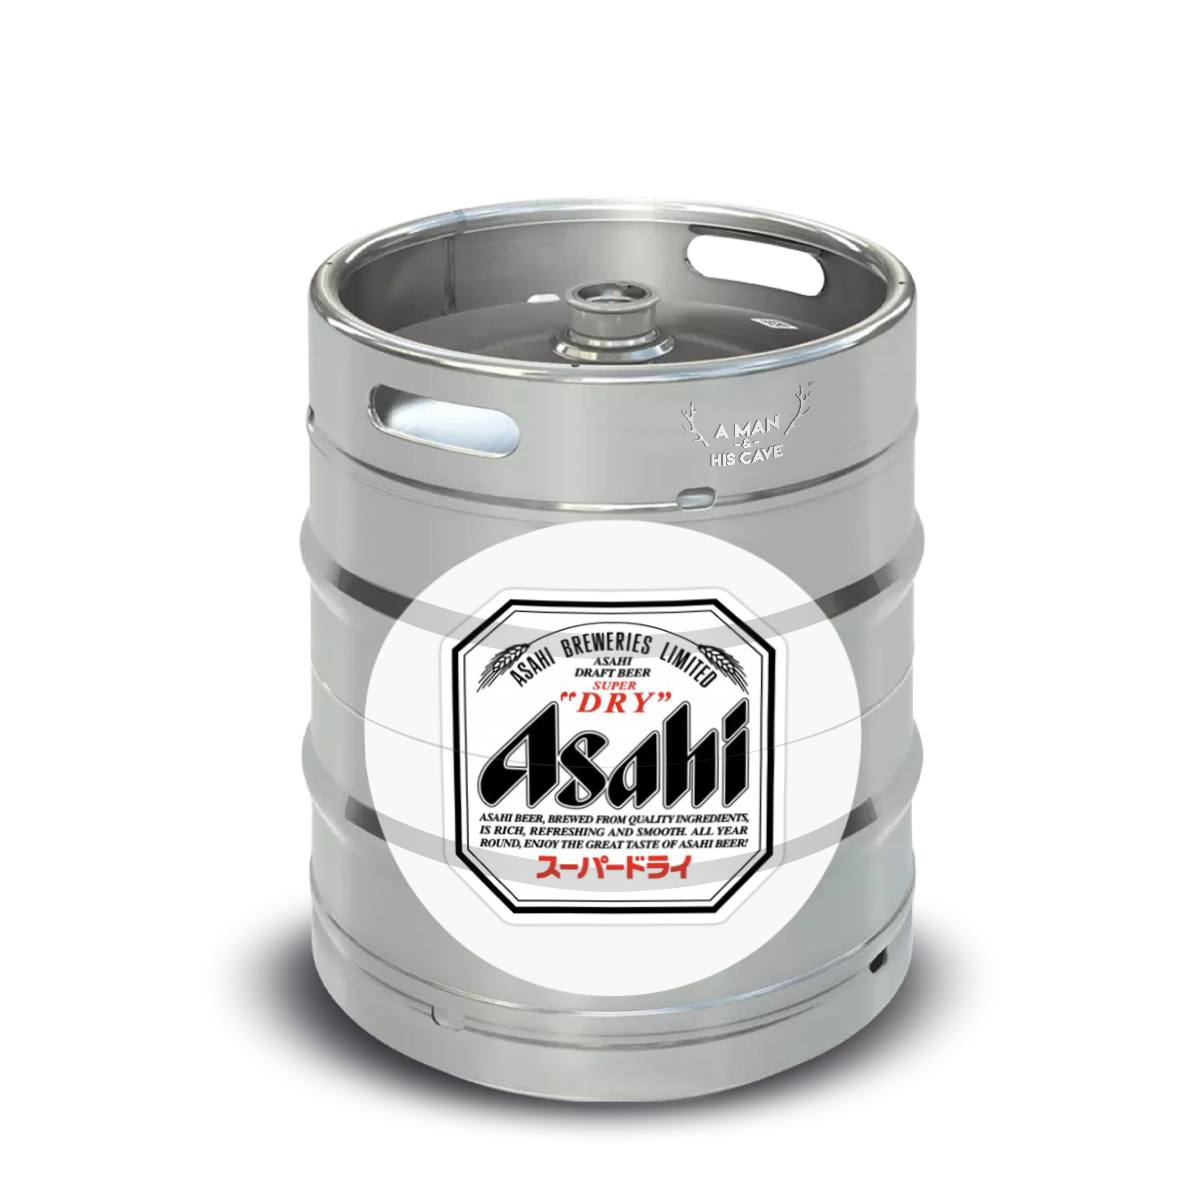 Beer Keg - Asahi 19lt Commercial Keg 5.0% S-Type Coupler [NSW]